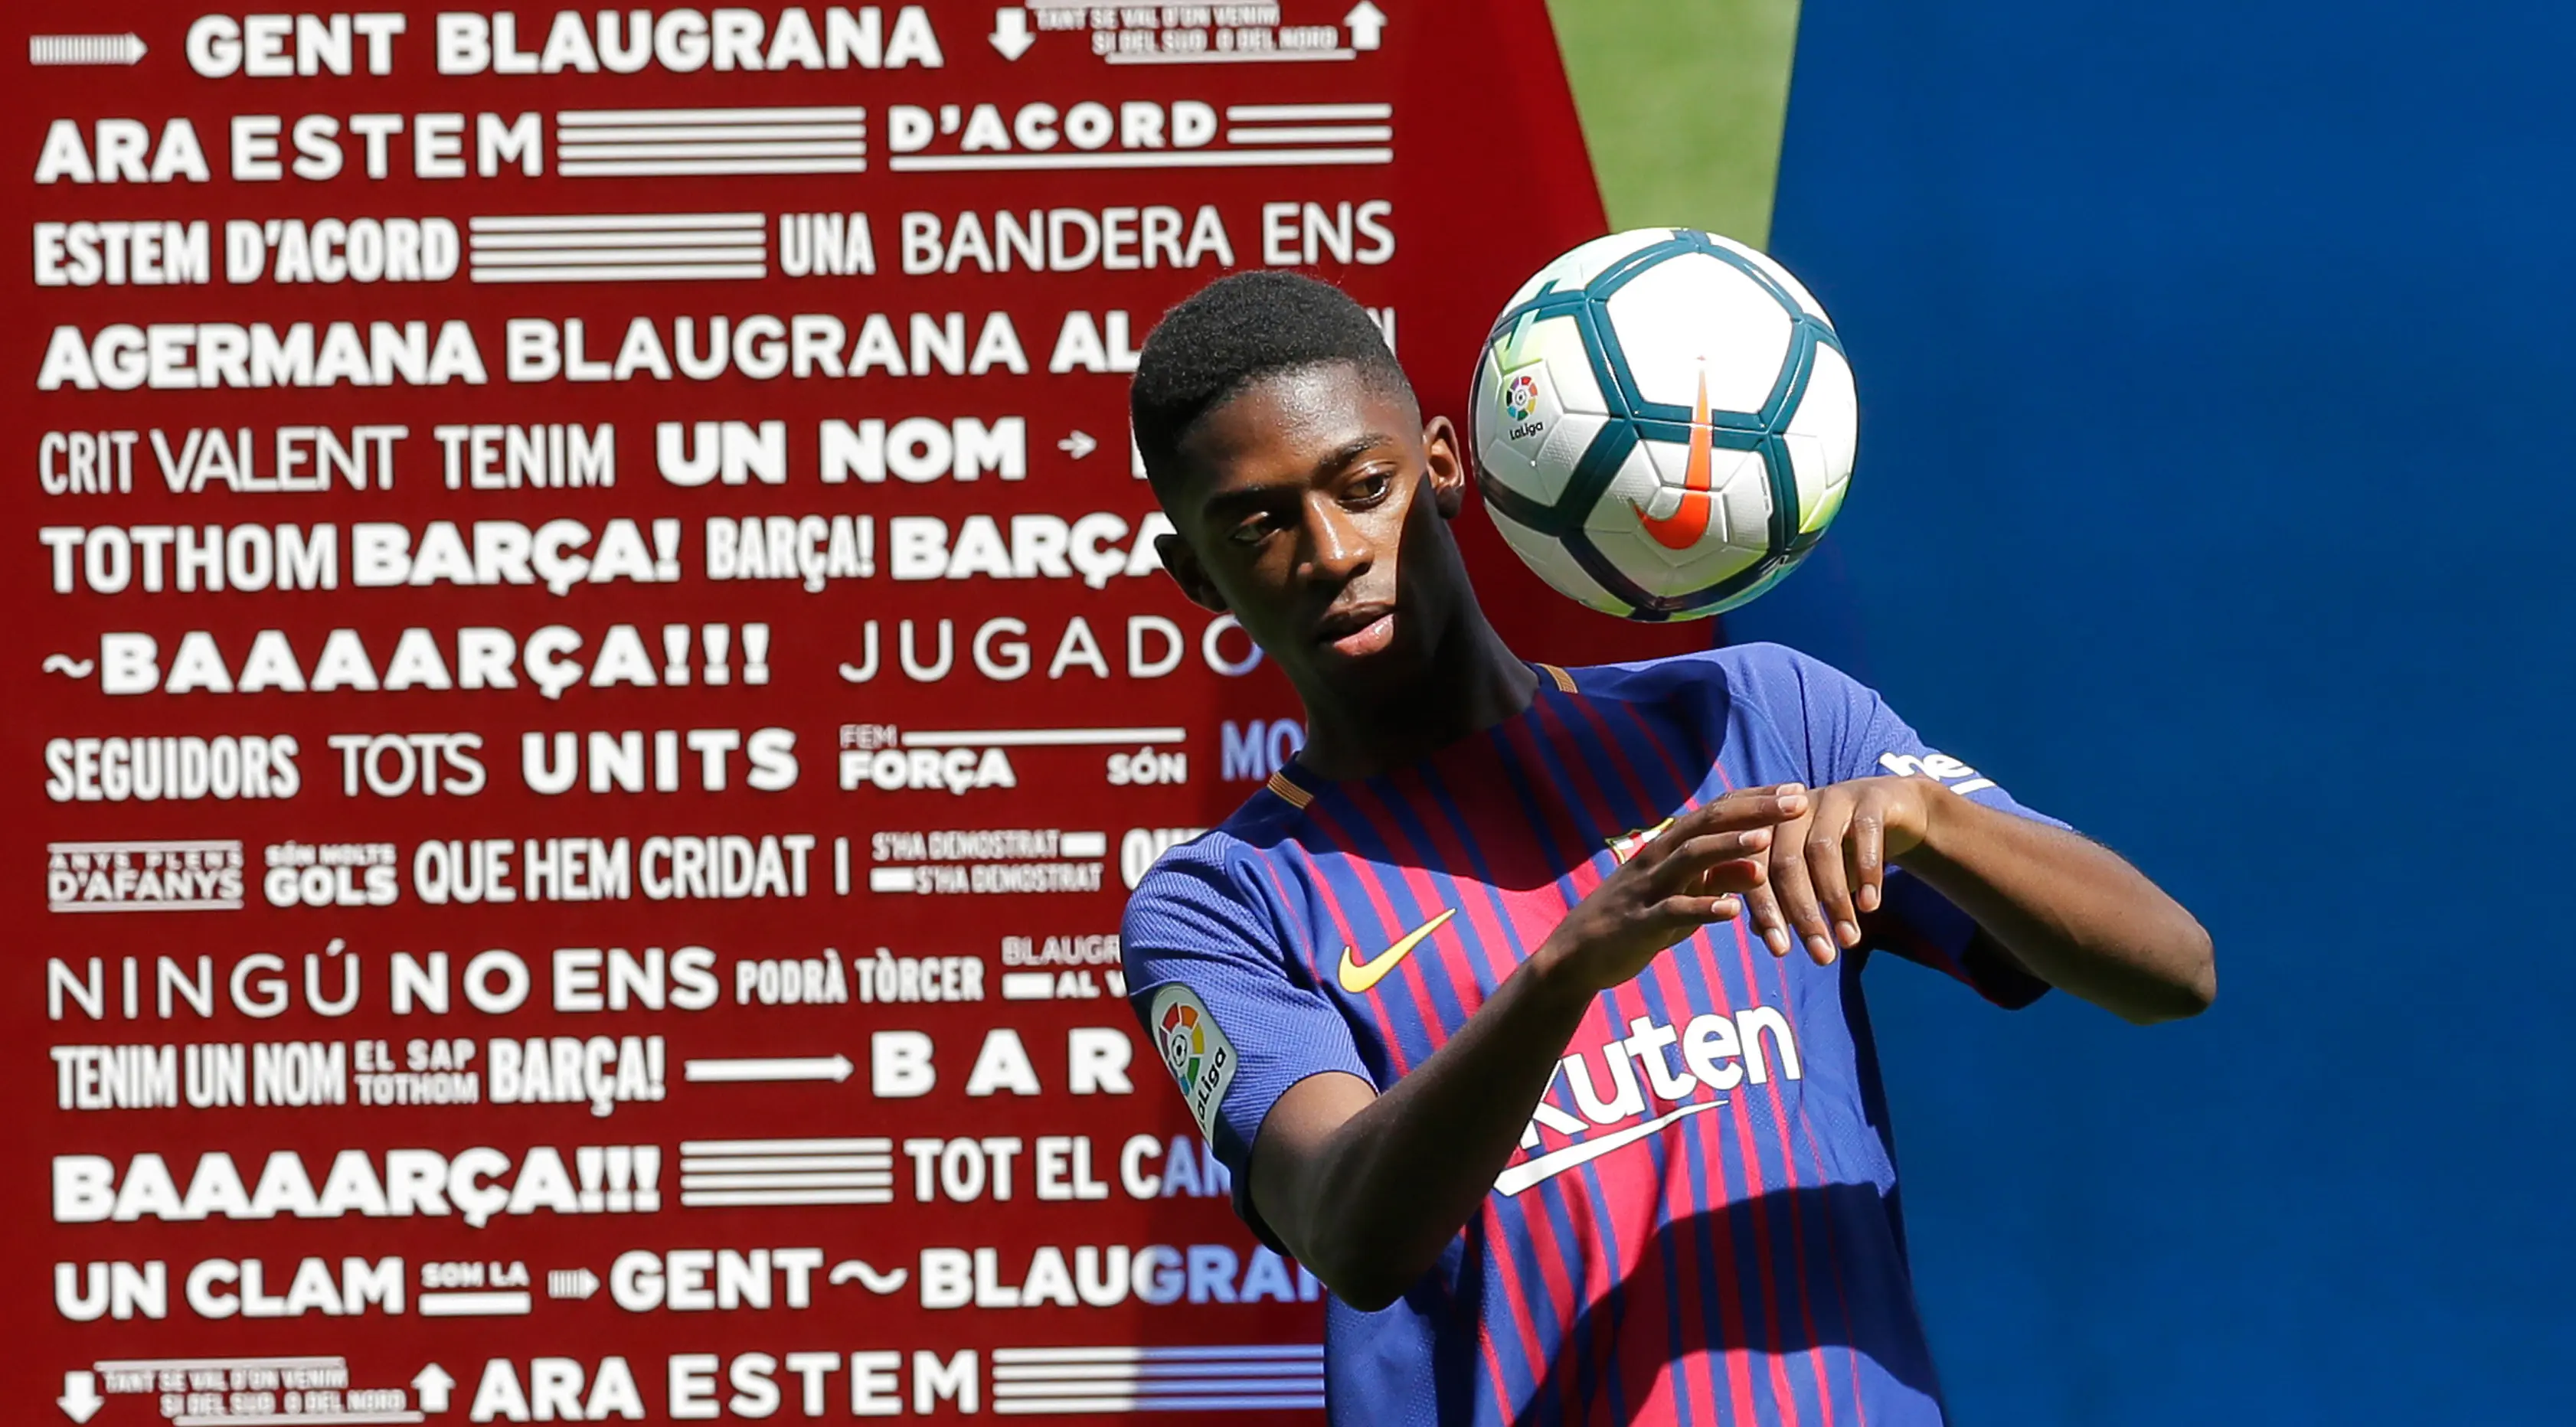 Penyerang baru Barcelona, Ousmane Dembele mengontrol bola saat perkenalan dirinya di Stadion Camp Nou, Barcelona, Spanyol, (28/8). Dembele dibeli Barcelona dari Borussia Dortmund. (AP Photo / Manu Fernandez)